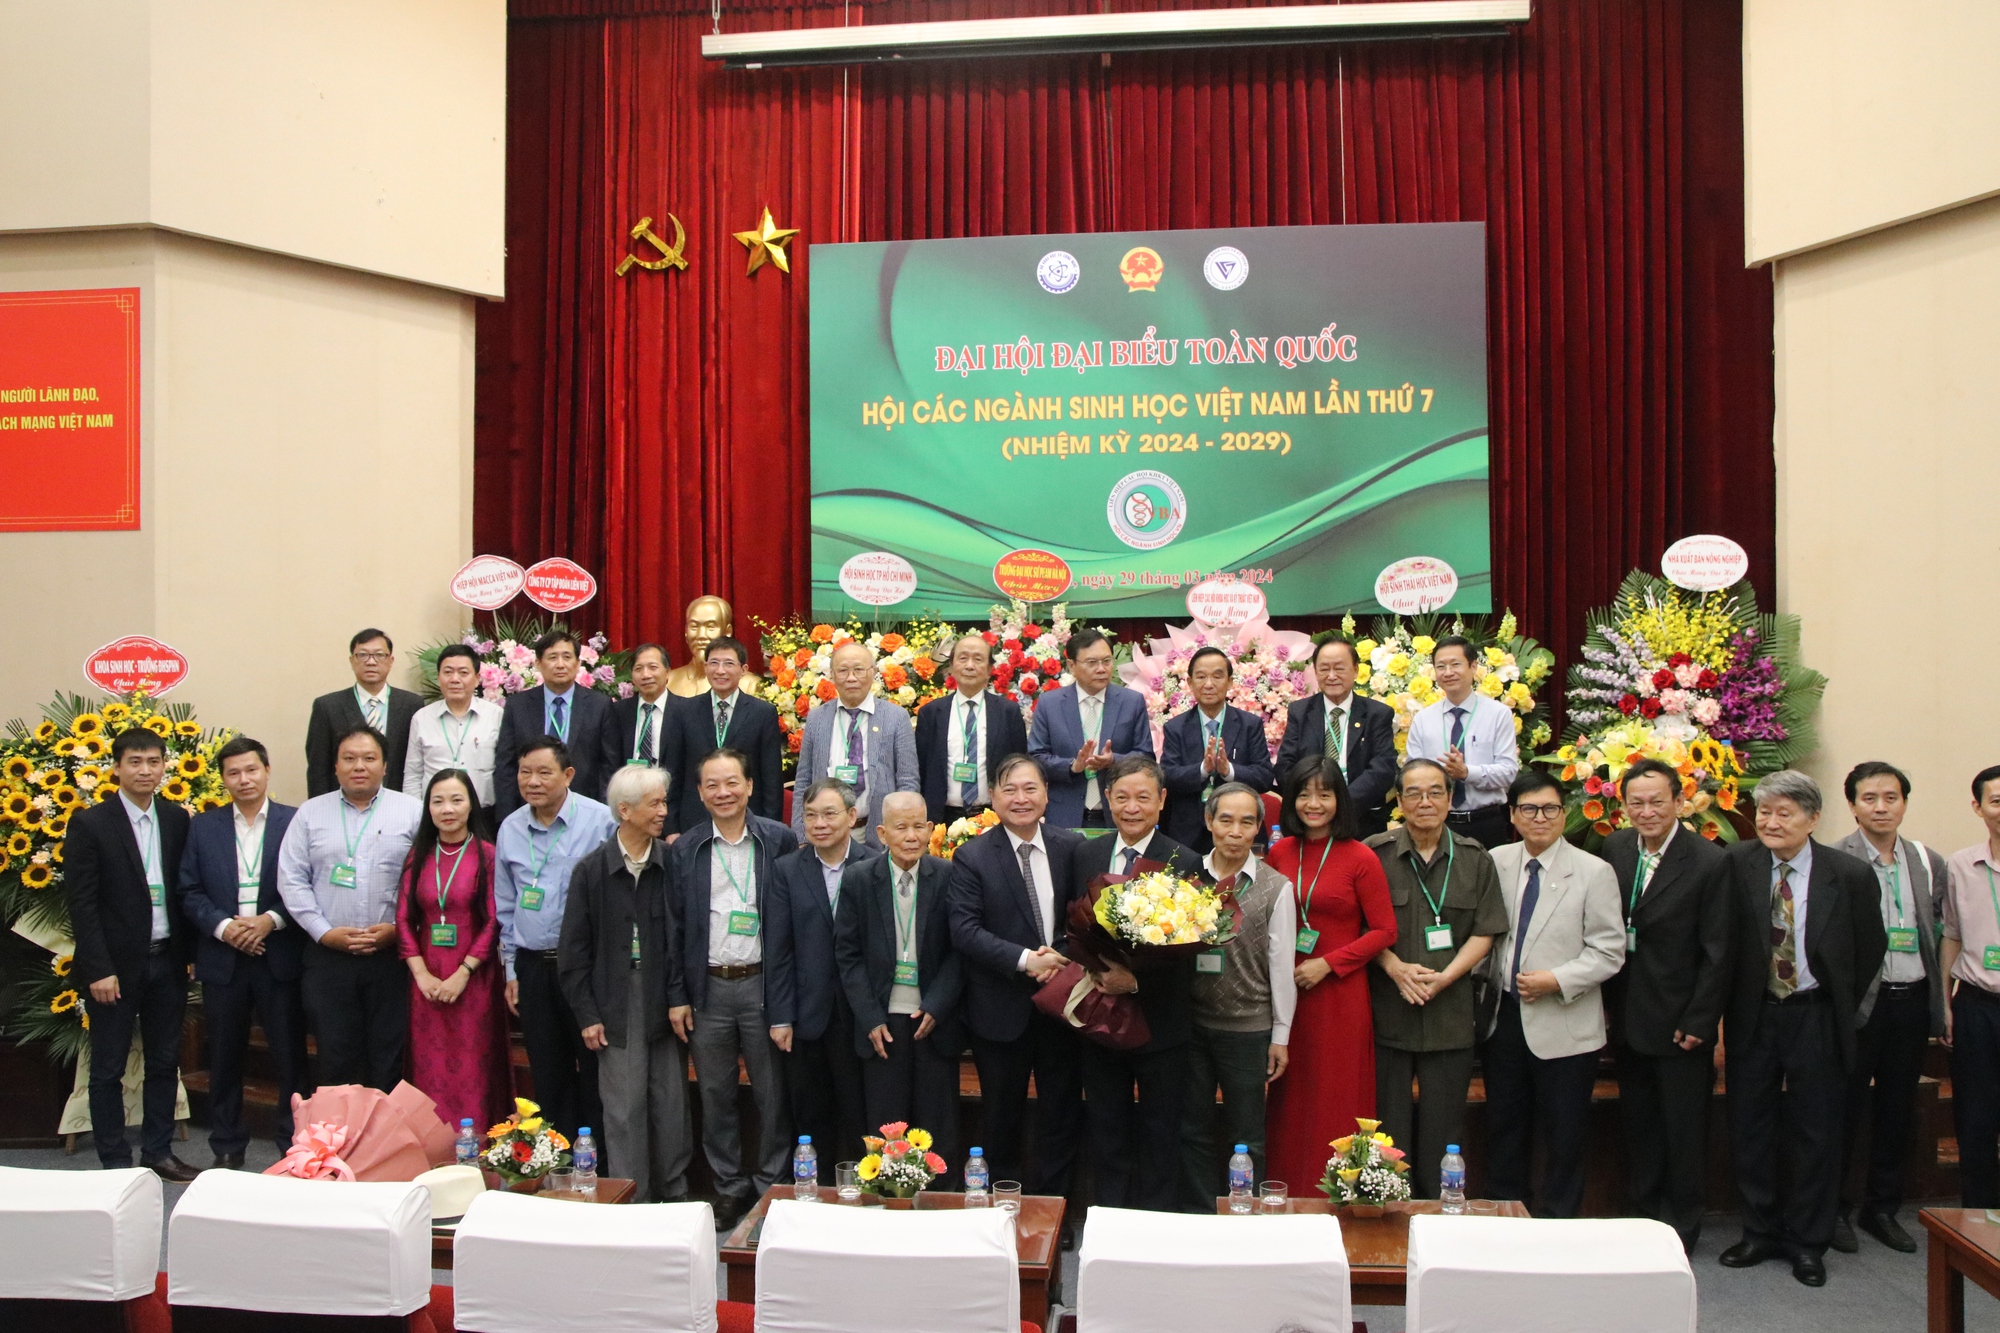 Đại hội Hội các ngành Sinh học Việt Nam lần thứ VII (nhiệm kỳ 2024- 2029): GS.TS Lê Trần Bình tái cử Chủ tịch Hội- Ảnh 6.